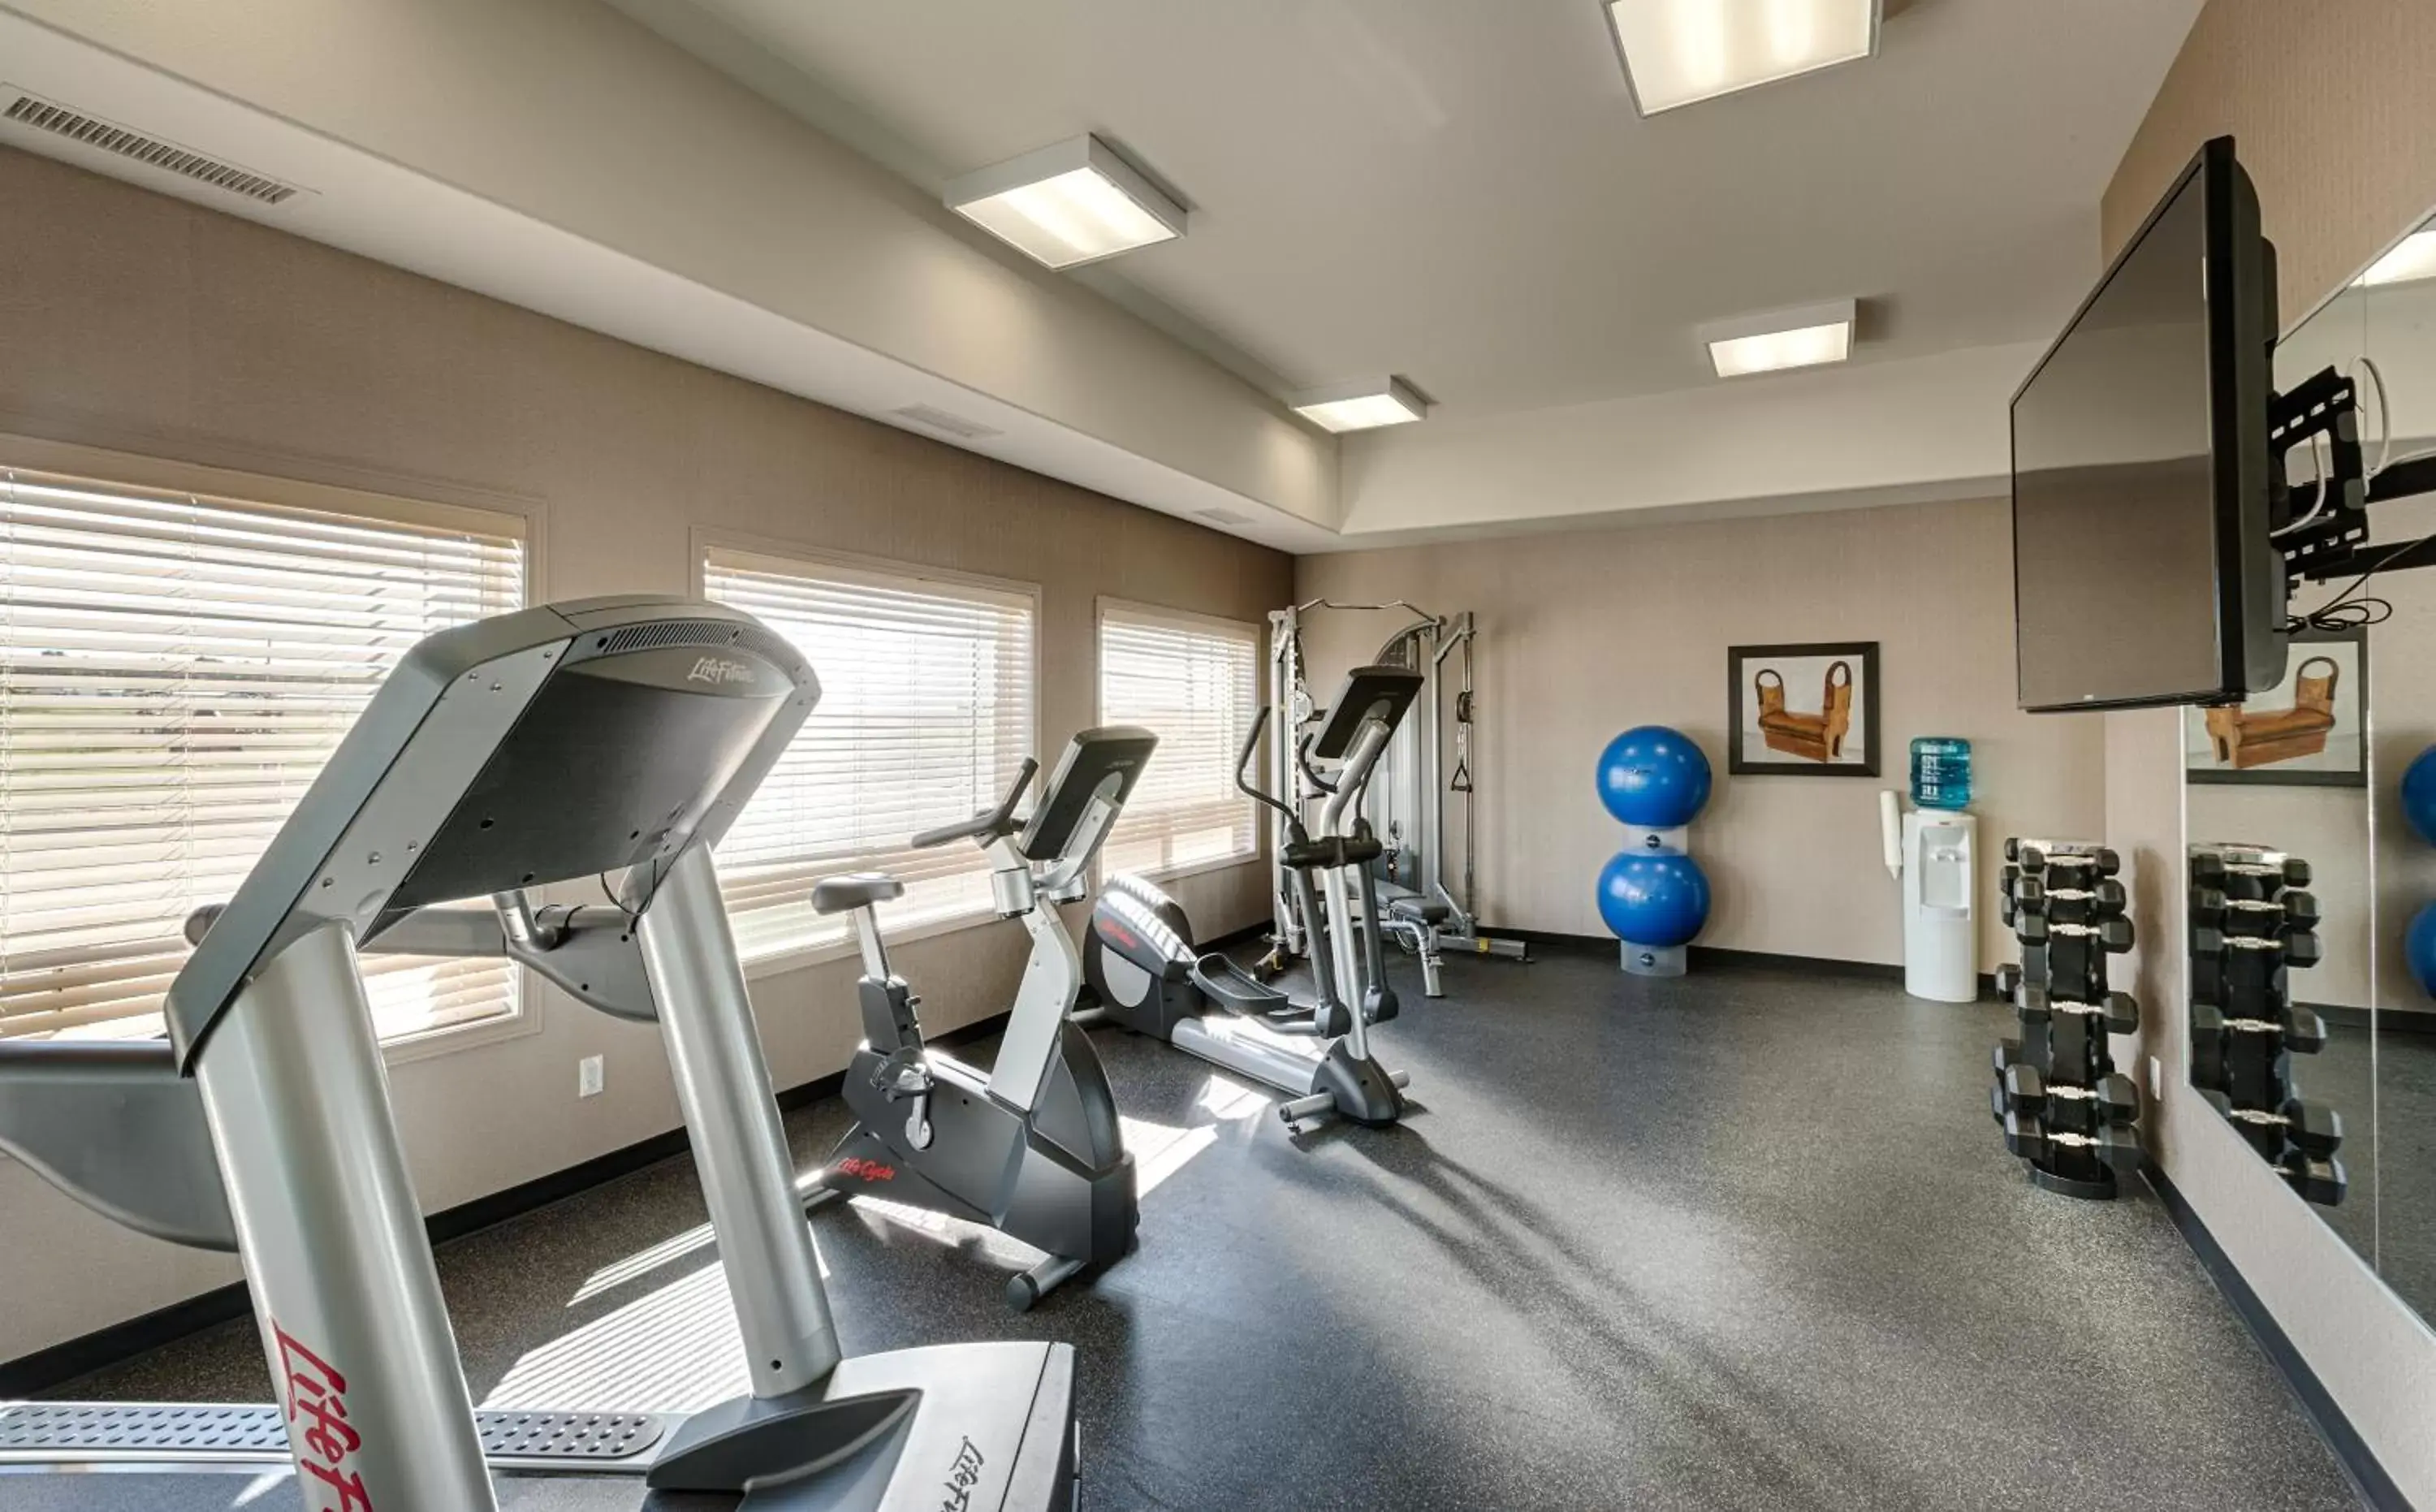 Fitness centre/facilities, Fitness Center/Facilities in Canalta Lac La Biche